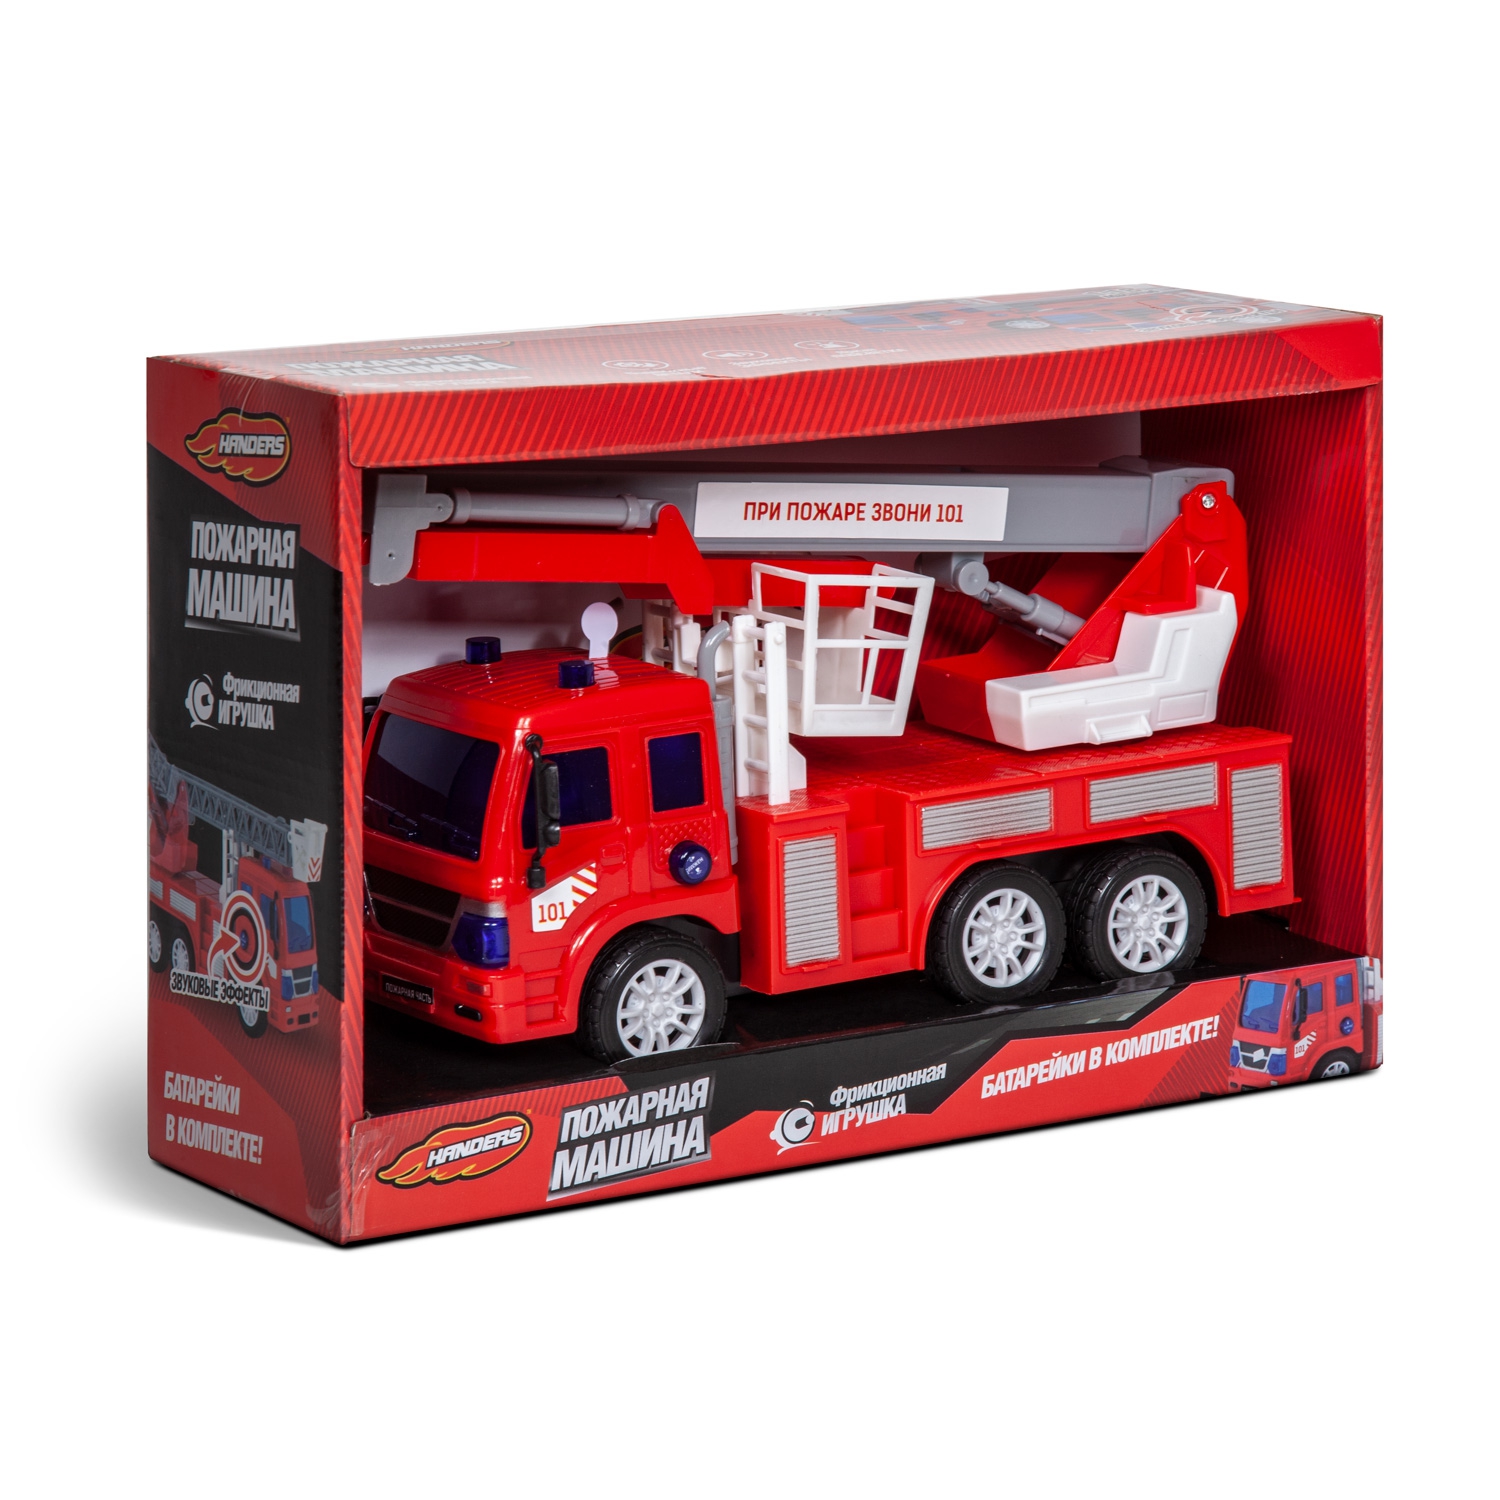 Фрикционная игрушка Handers Пожарная машина: Автовышка (26 см, свет, звук, подвиж. детали) (107020